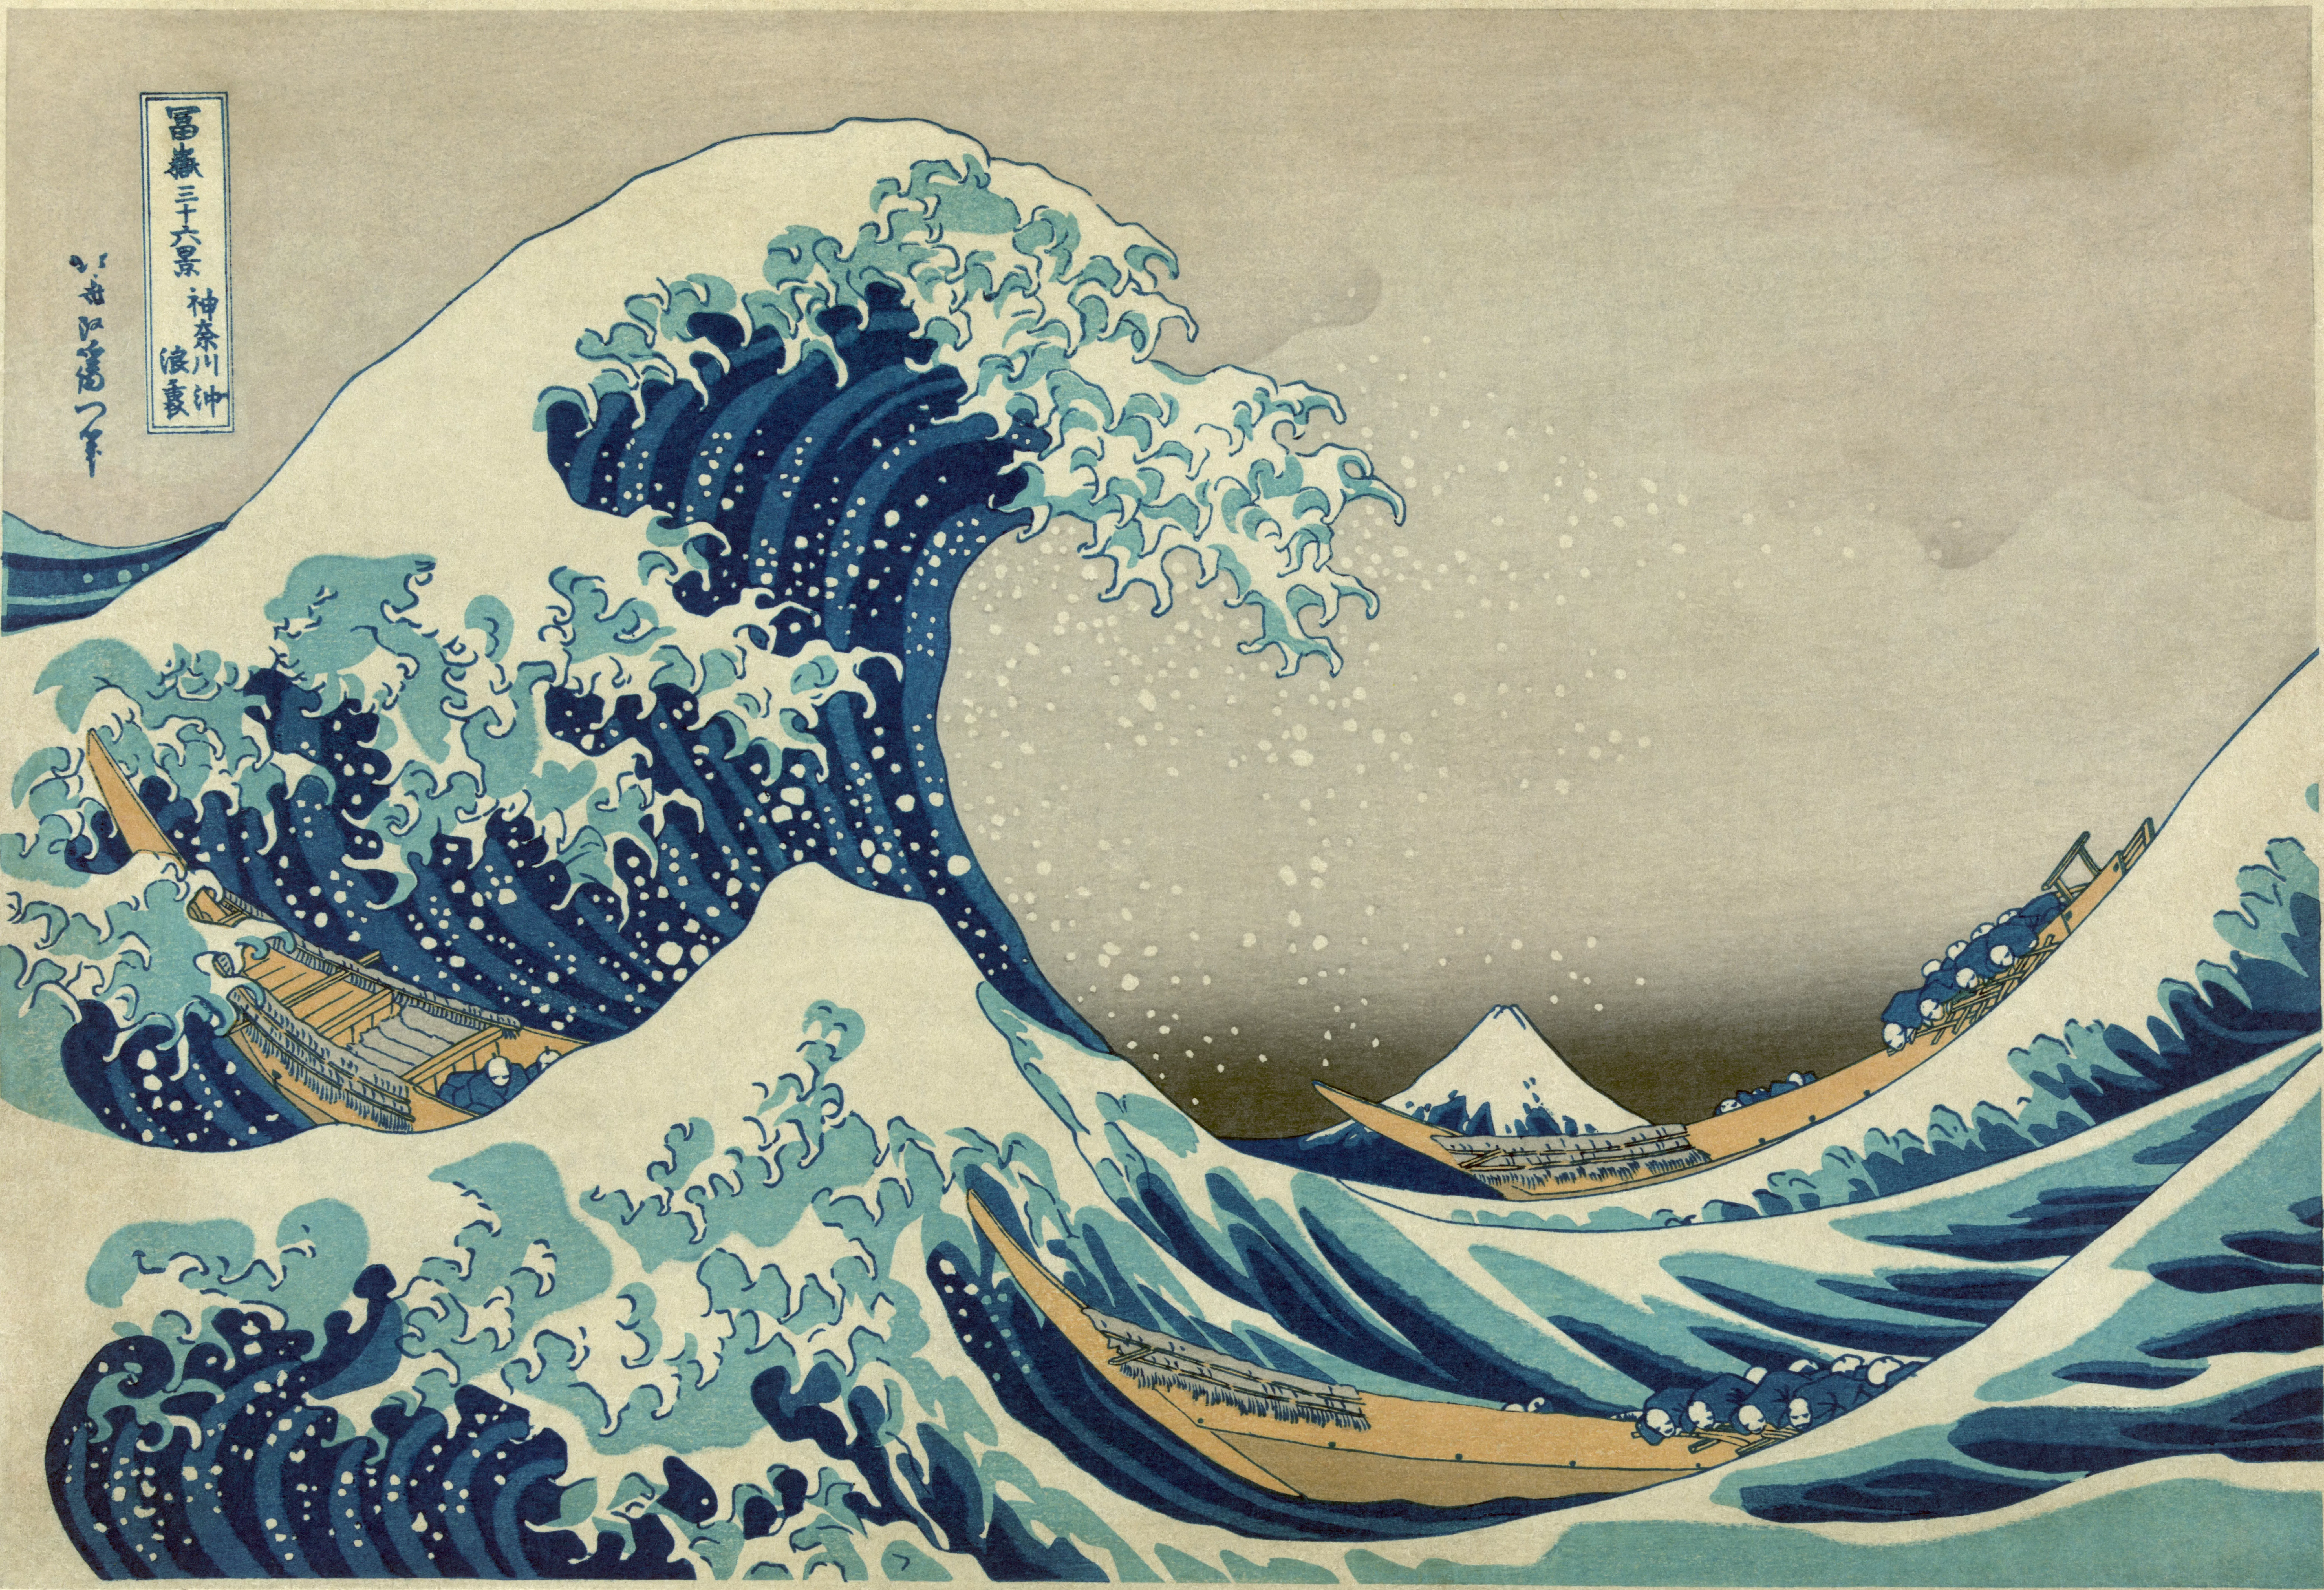 Aquesta estampa és l'obra més coneguda de Hokusai i la primera de la seva famosa sèrie Fugaku sanjūrokkei